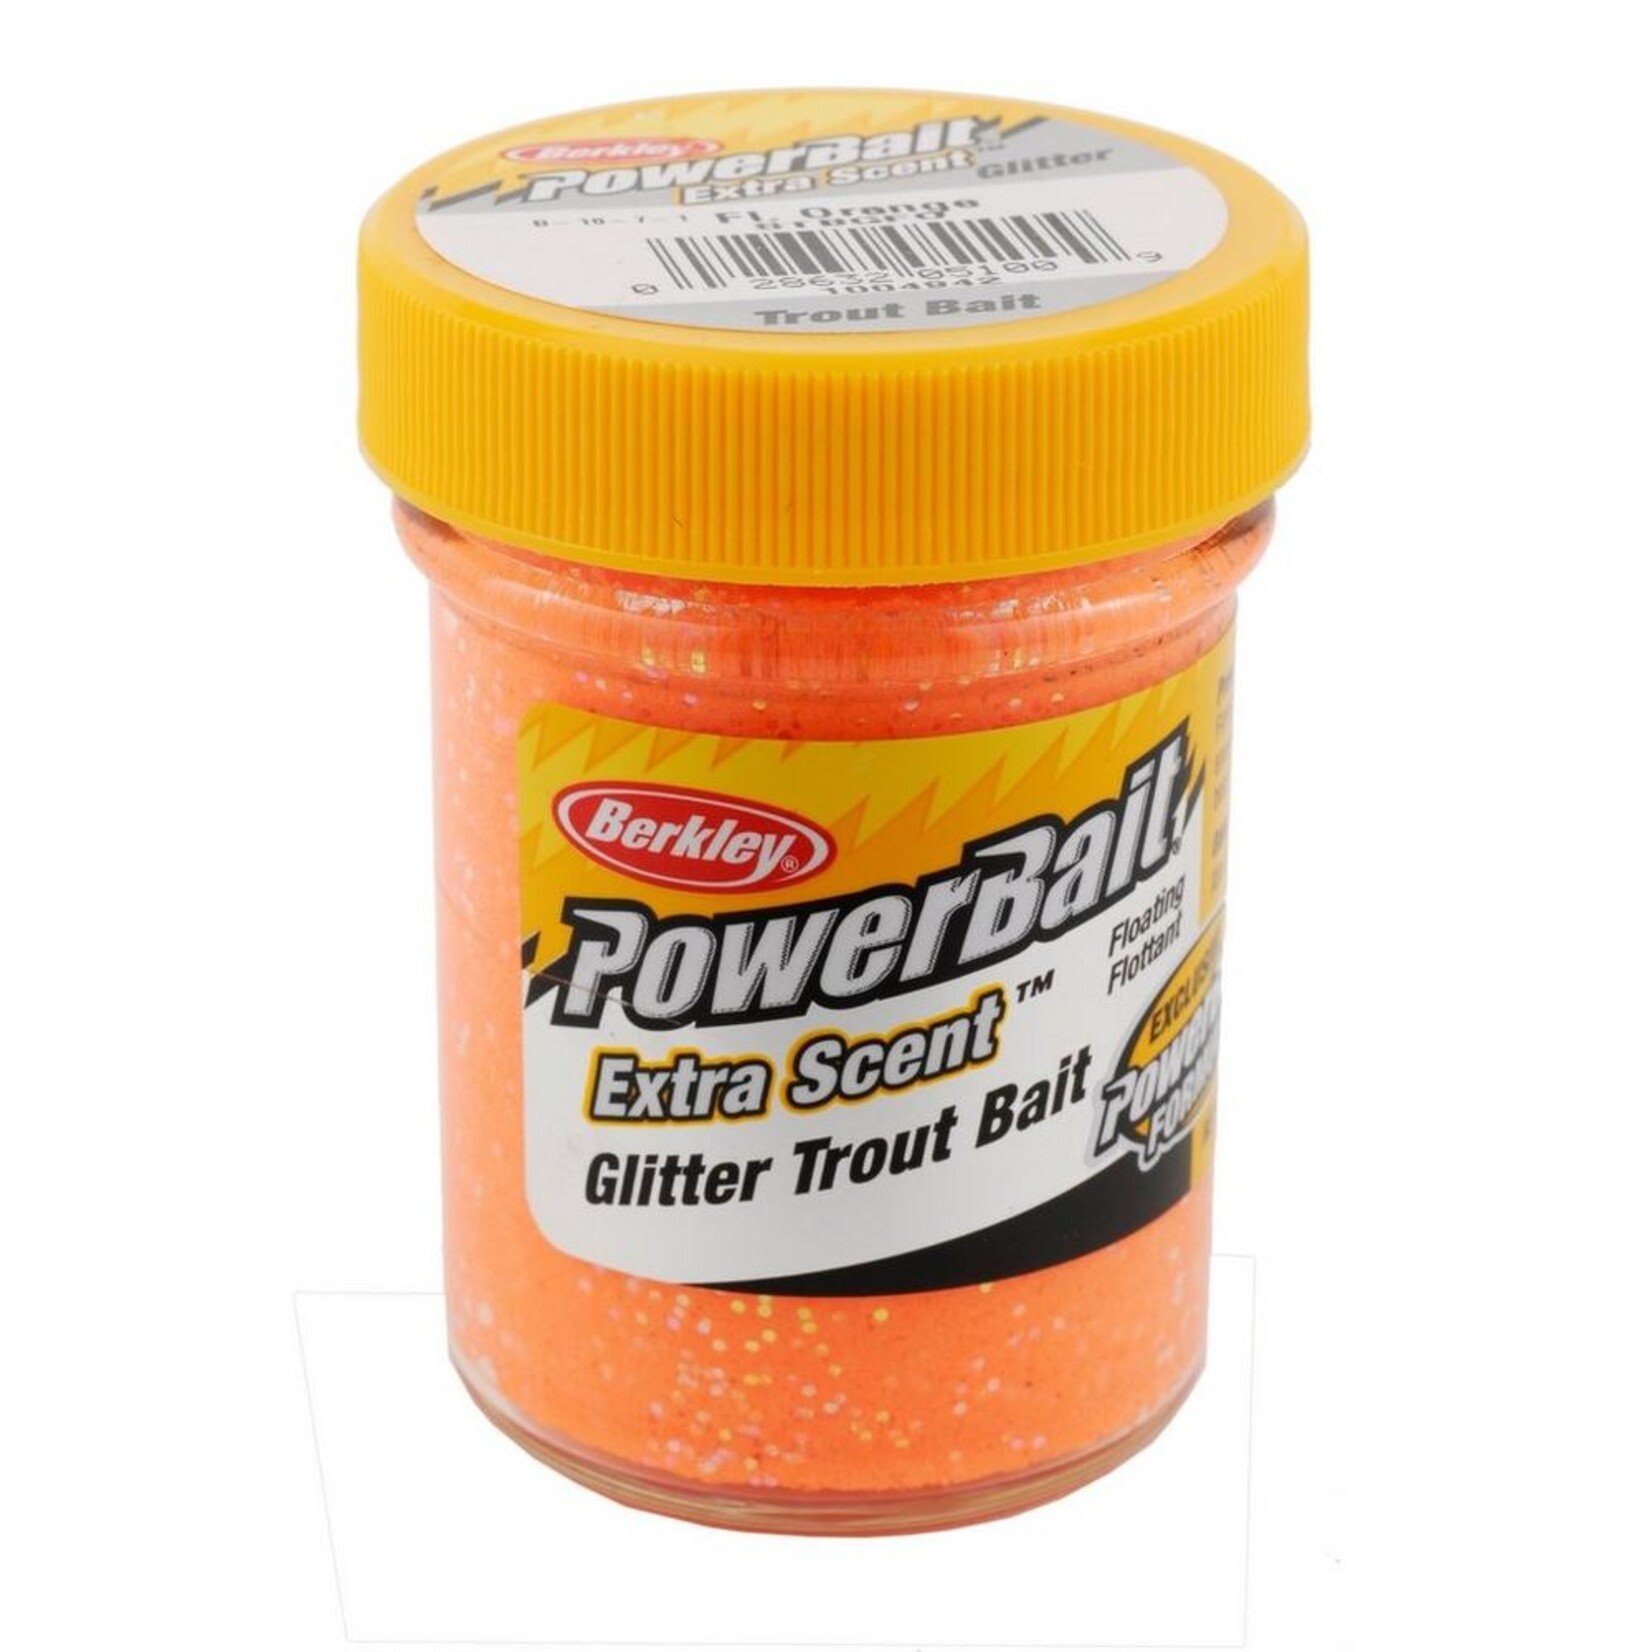 Power Bait Glitter - Poor Richards